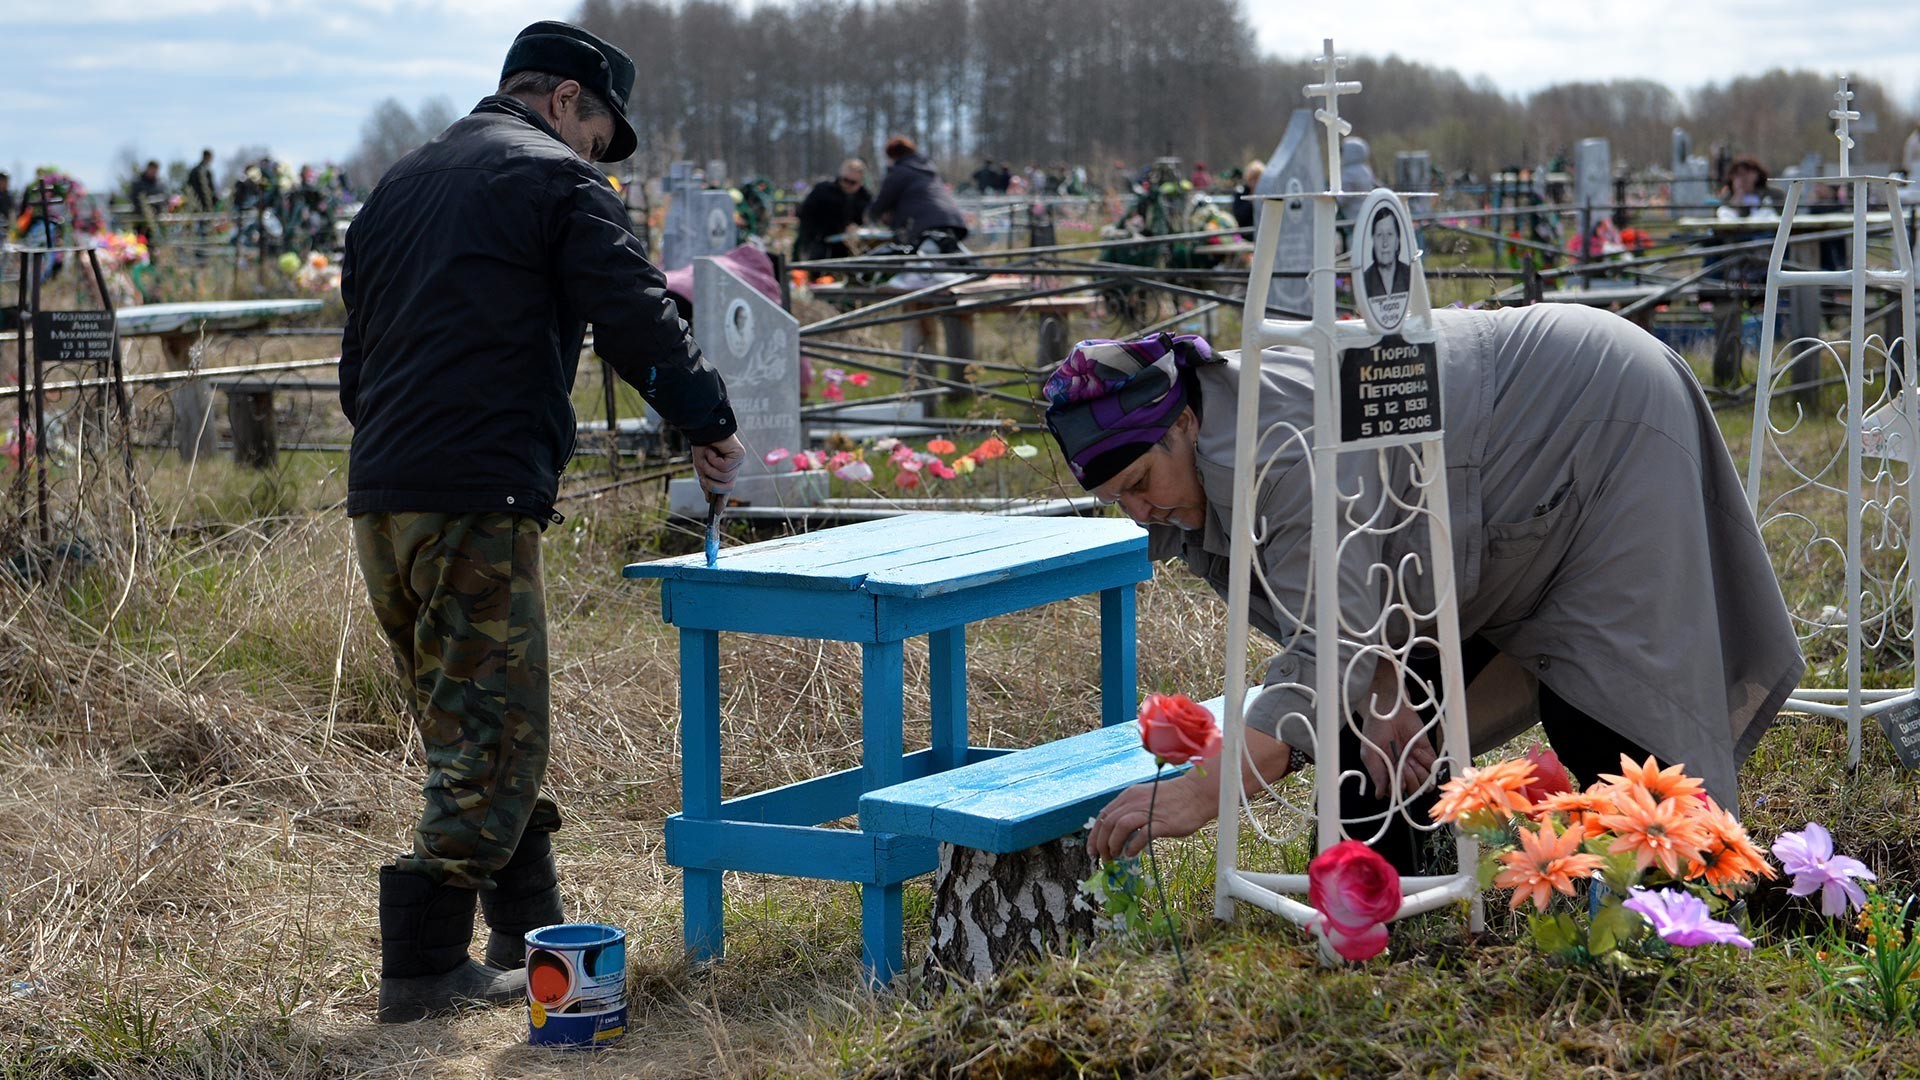 Rusi med opravili na pokopališču v Omski regiji v Rusiji, med praznikom Radonice, spominskim praznikom.
